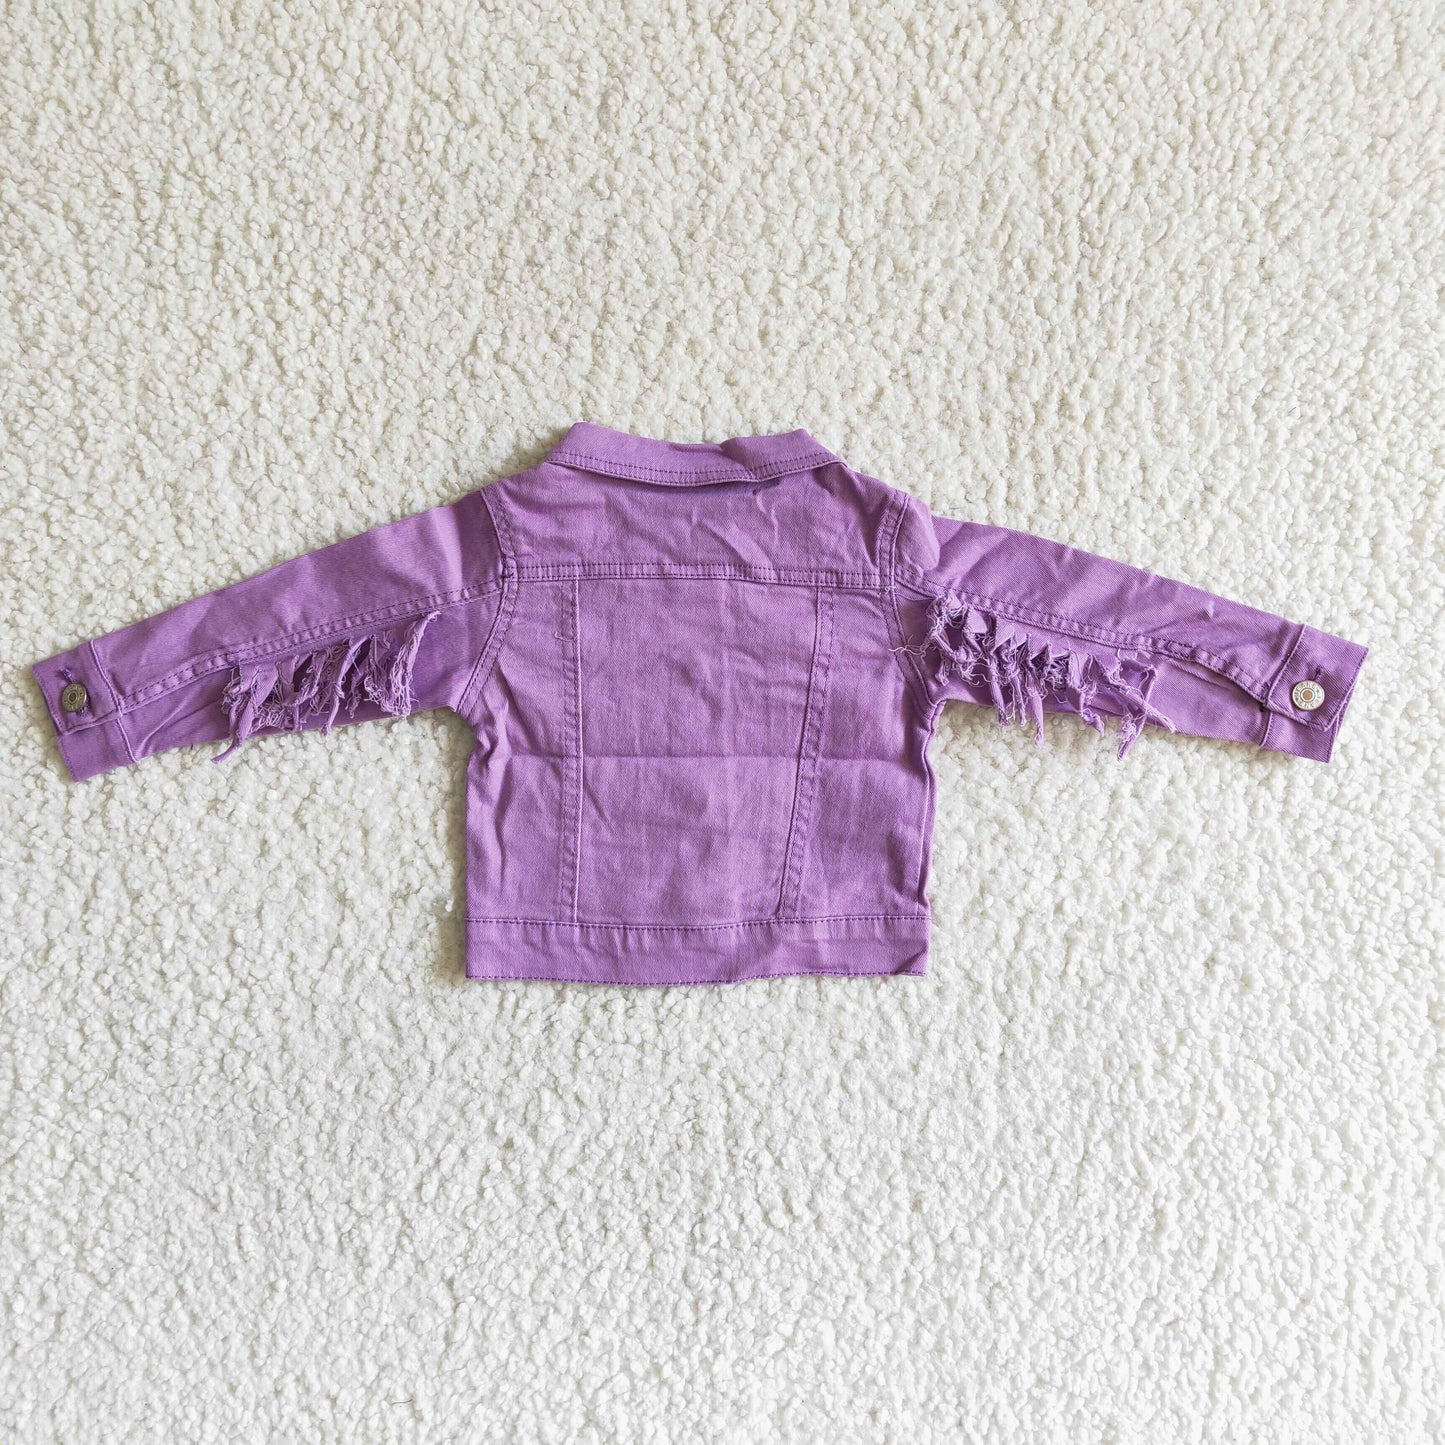 Lavender color tassels girls spring denim jacket